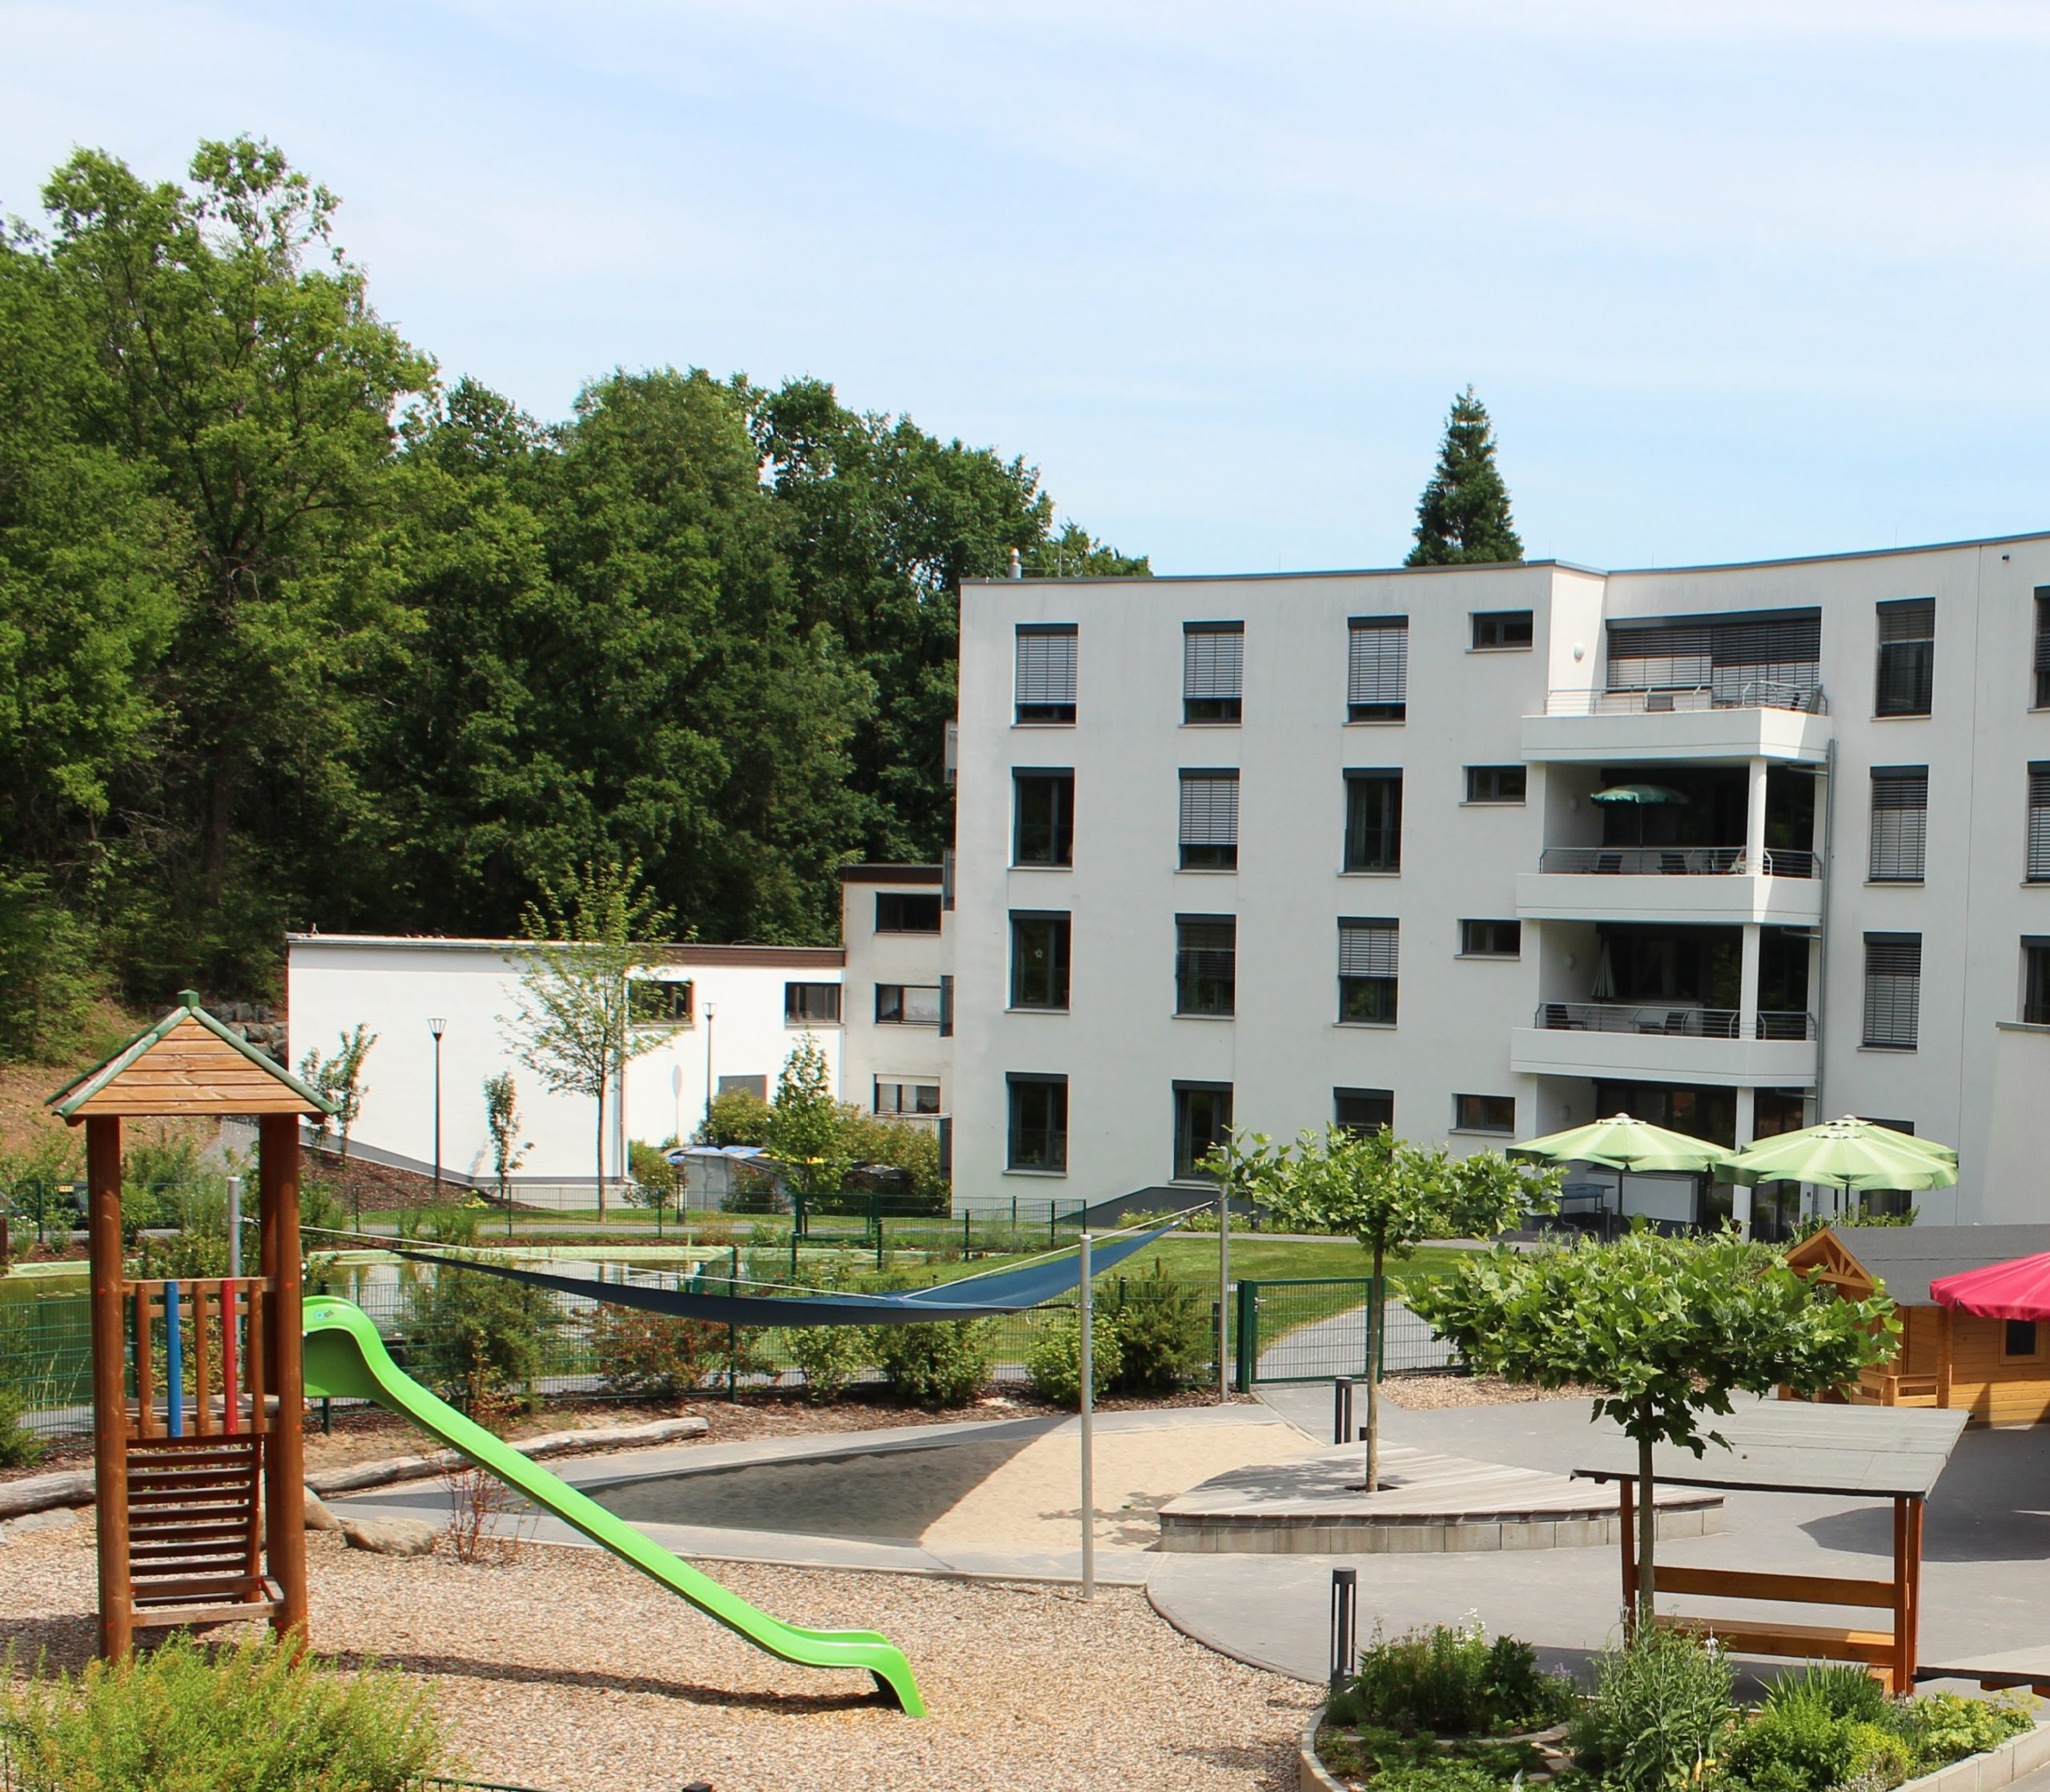 Heller Spielplatz mit Gebäude im Hintergrund: hellgrüne Rutsche, großer Sandbereich mit Sonnensegel, Außenbepflanzung grüne Sträucher sowie vereinzelte junge Platanenbäumen auf dem Gelände.